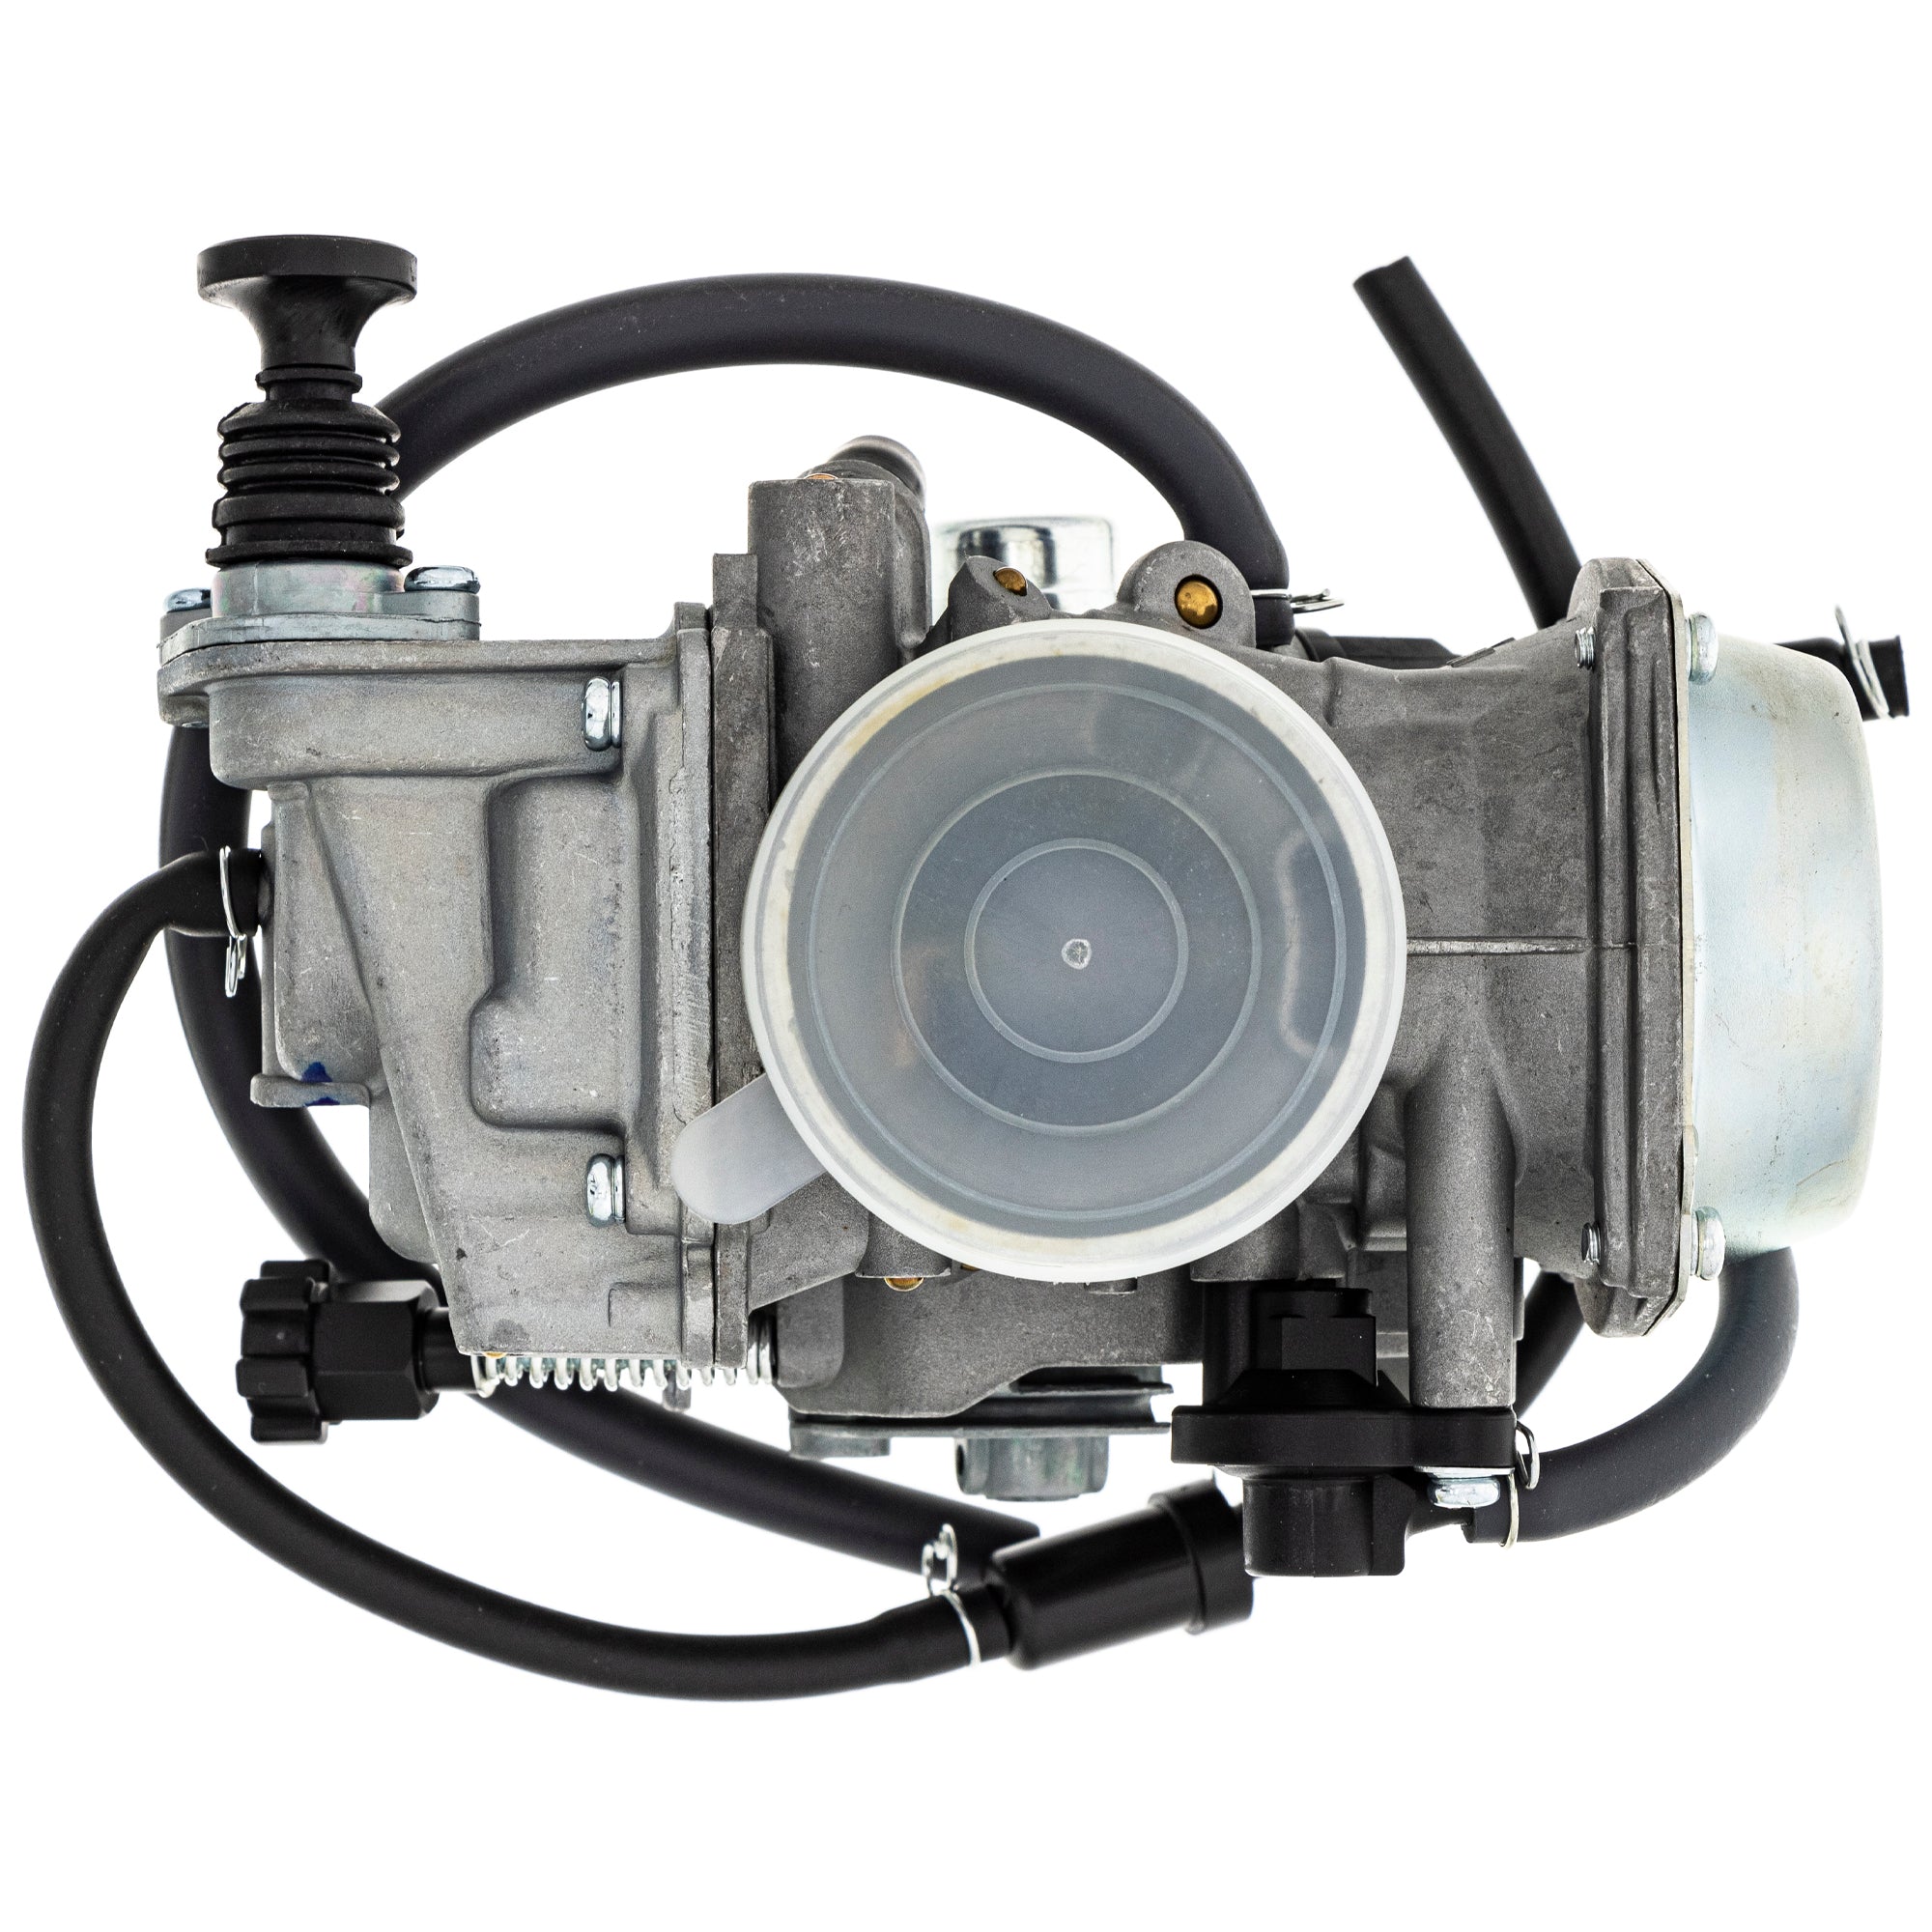 Carburetor Assembly For Honda 16100-HM7-L02 16100-HM7-L01 16100-HM7-L00 16100-HM7-A00 16100-HM7-701